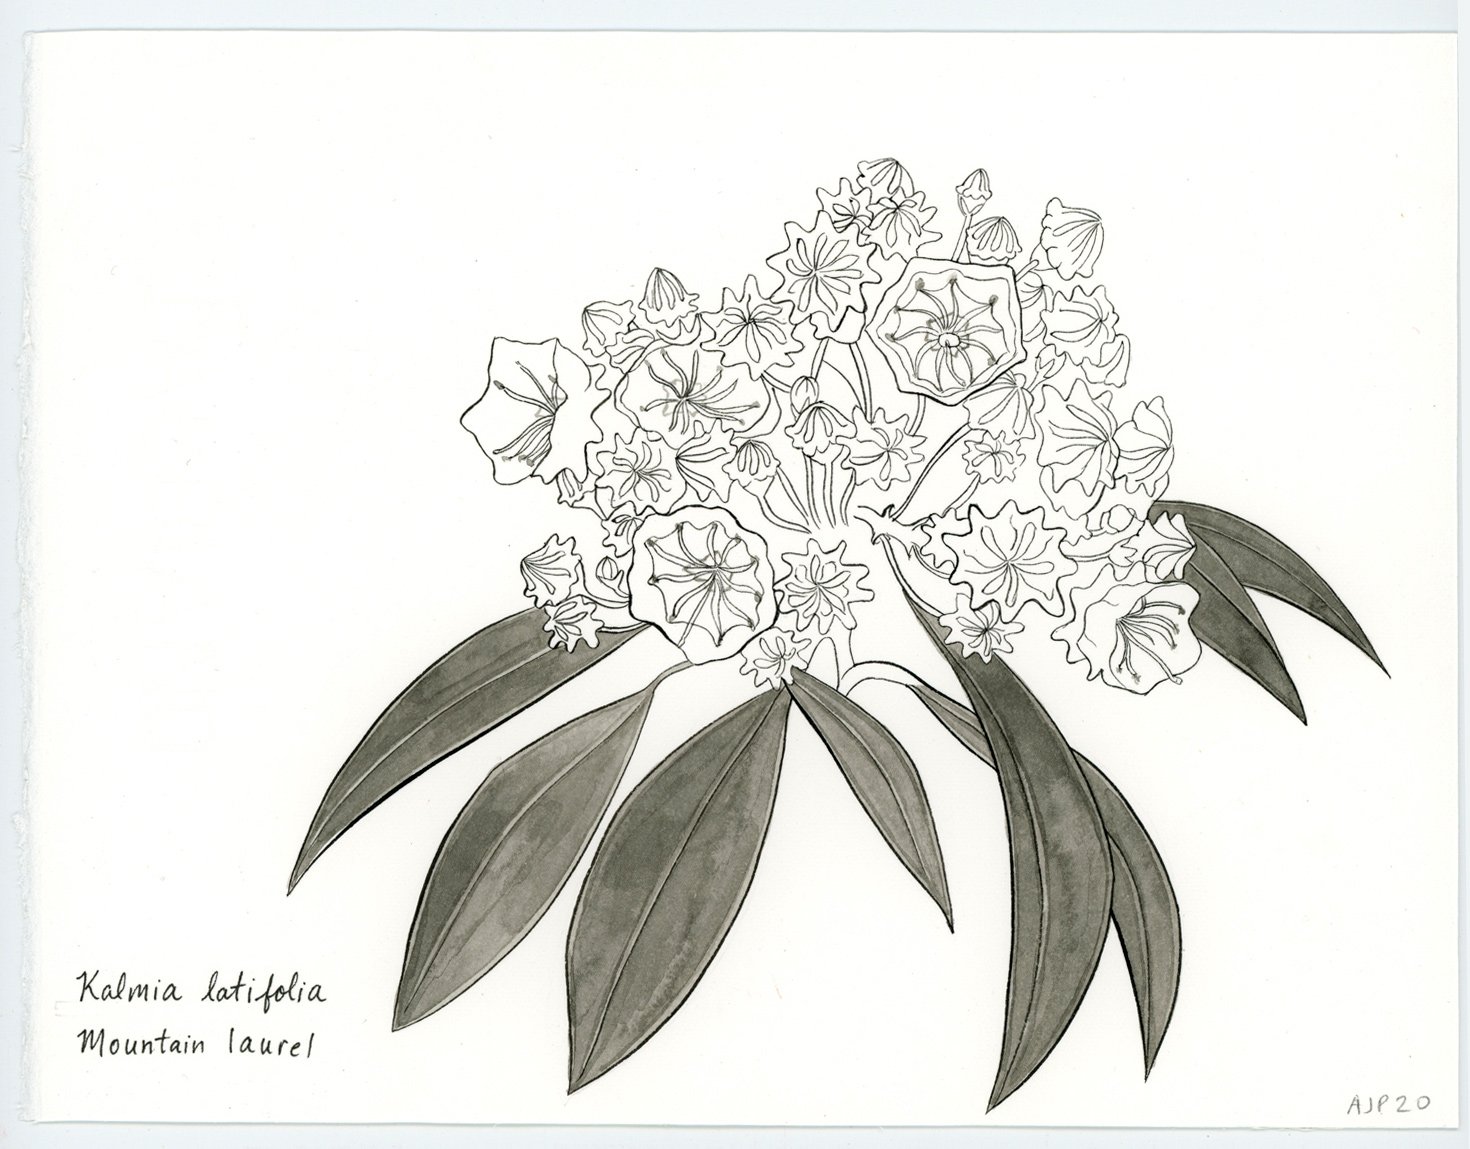 Kalmia latifolia / Mountain laurel